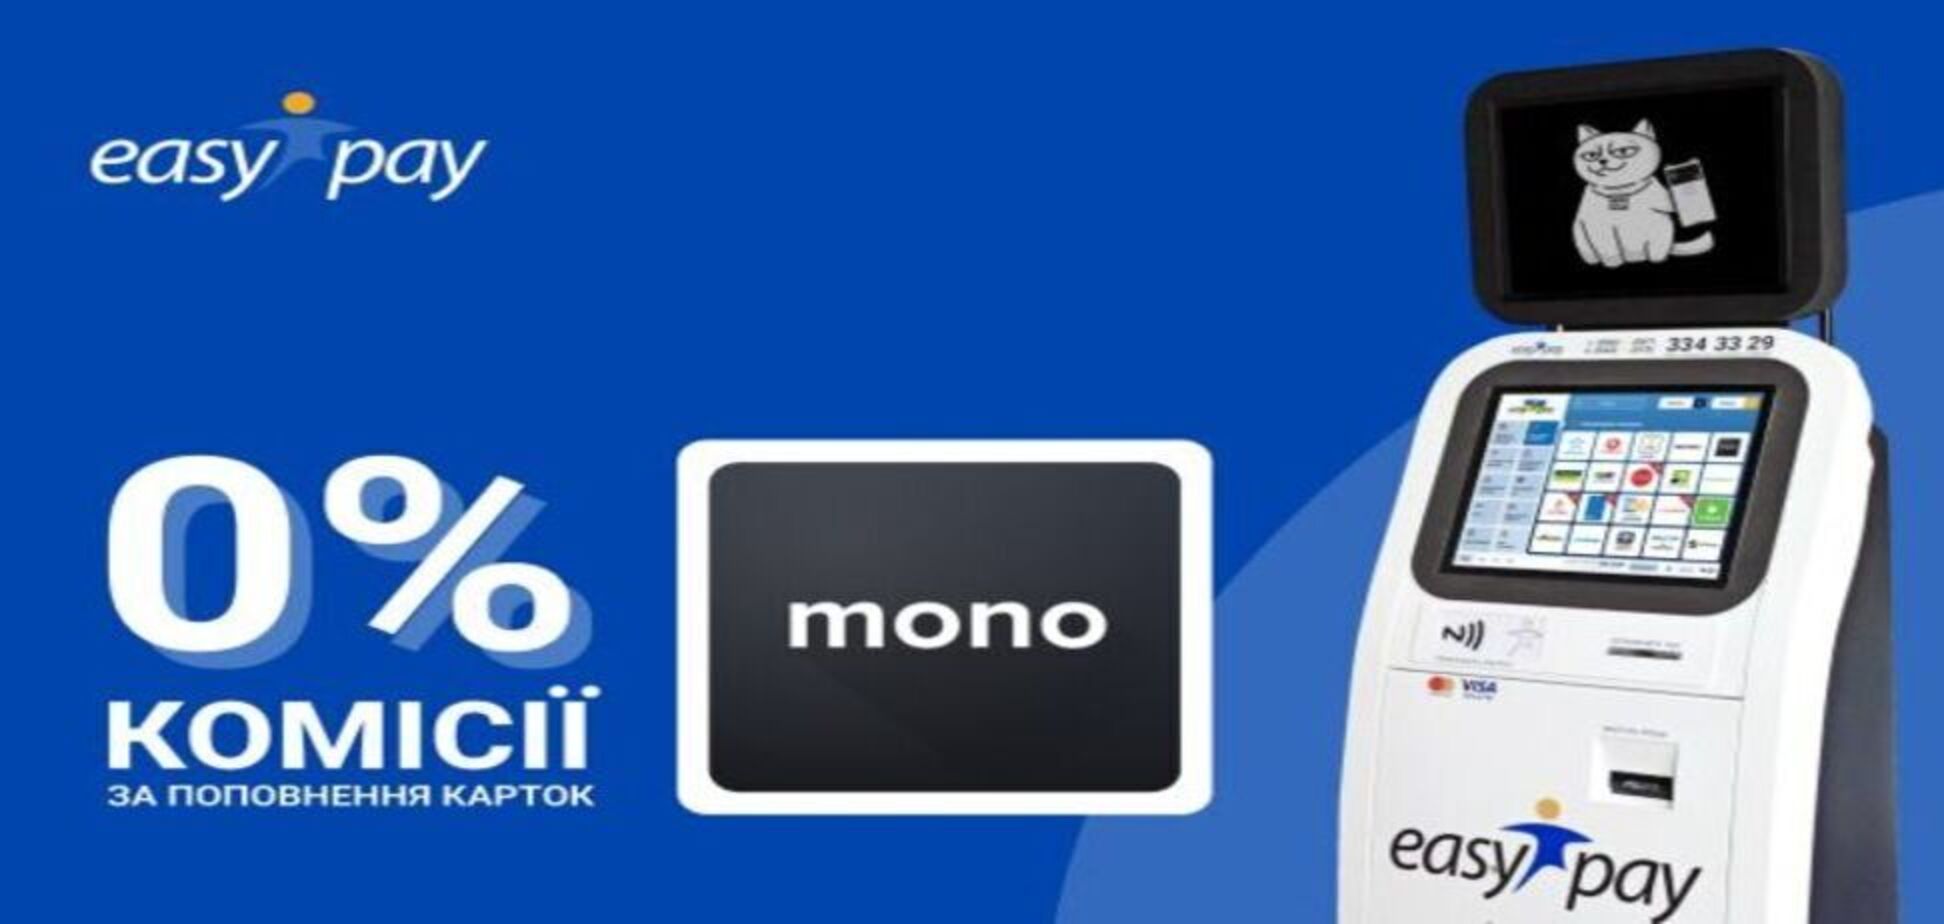 Карточку Monobank можно пополнить без комиссии в EasyPay – крупнейшей сети терминалов в Украине